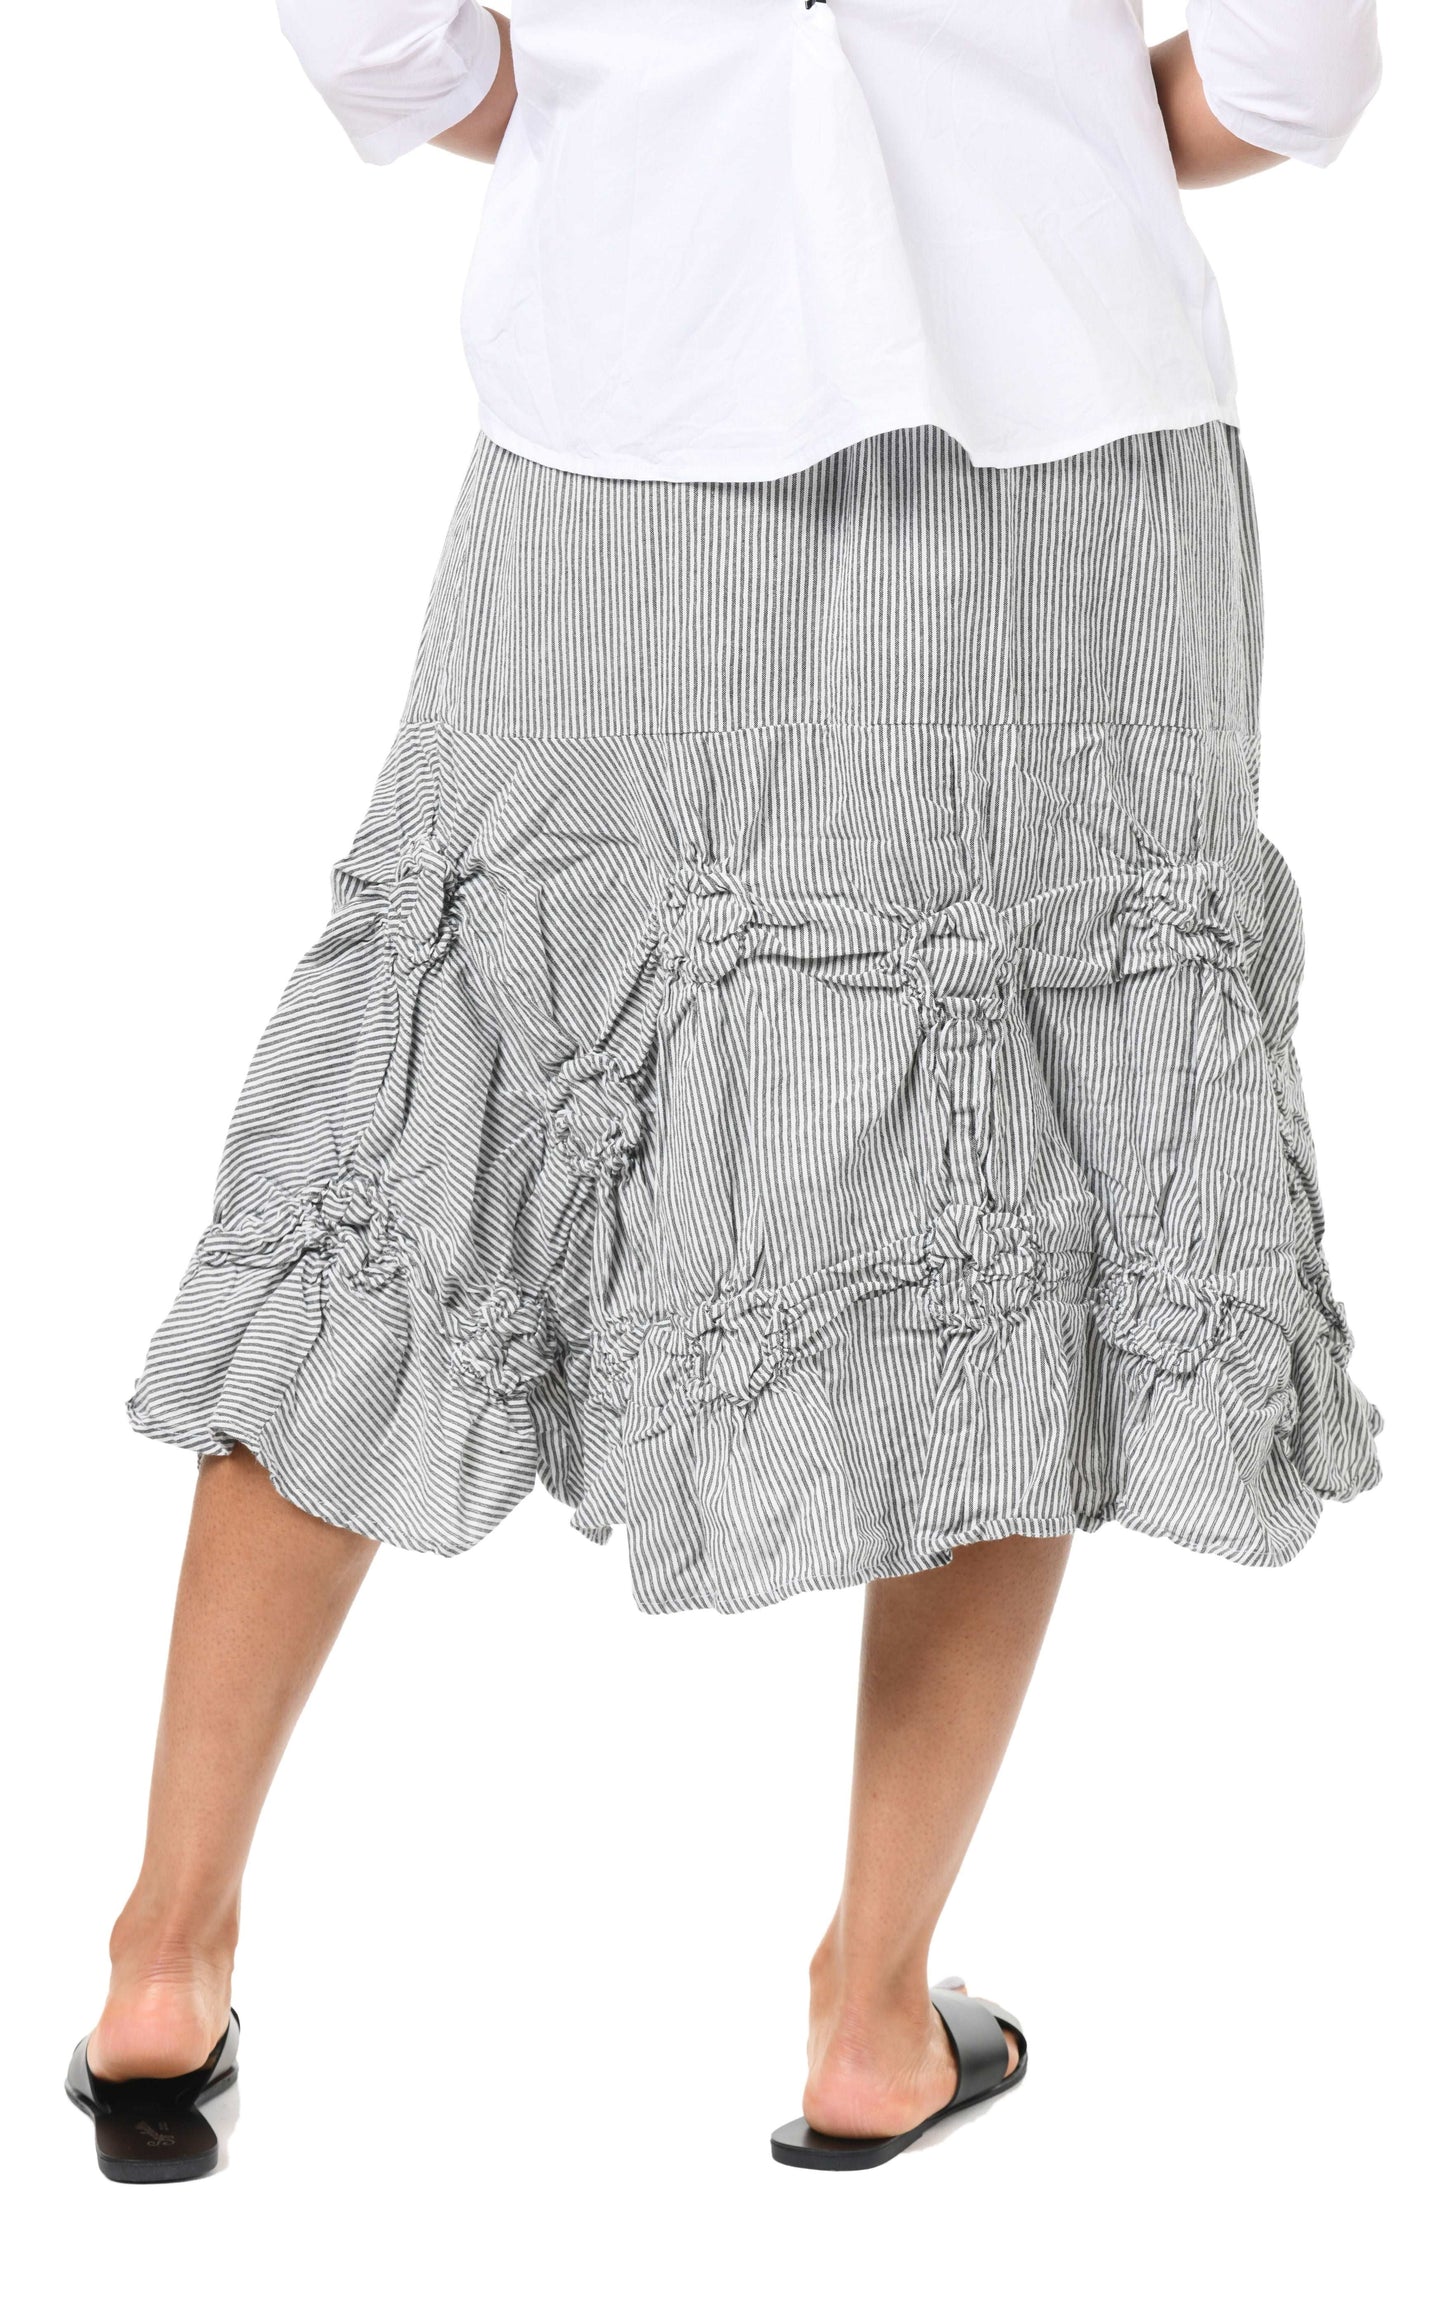 CV378 Millie Skirt in Ticking Stripe